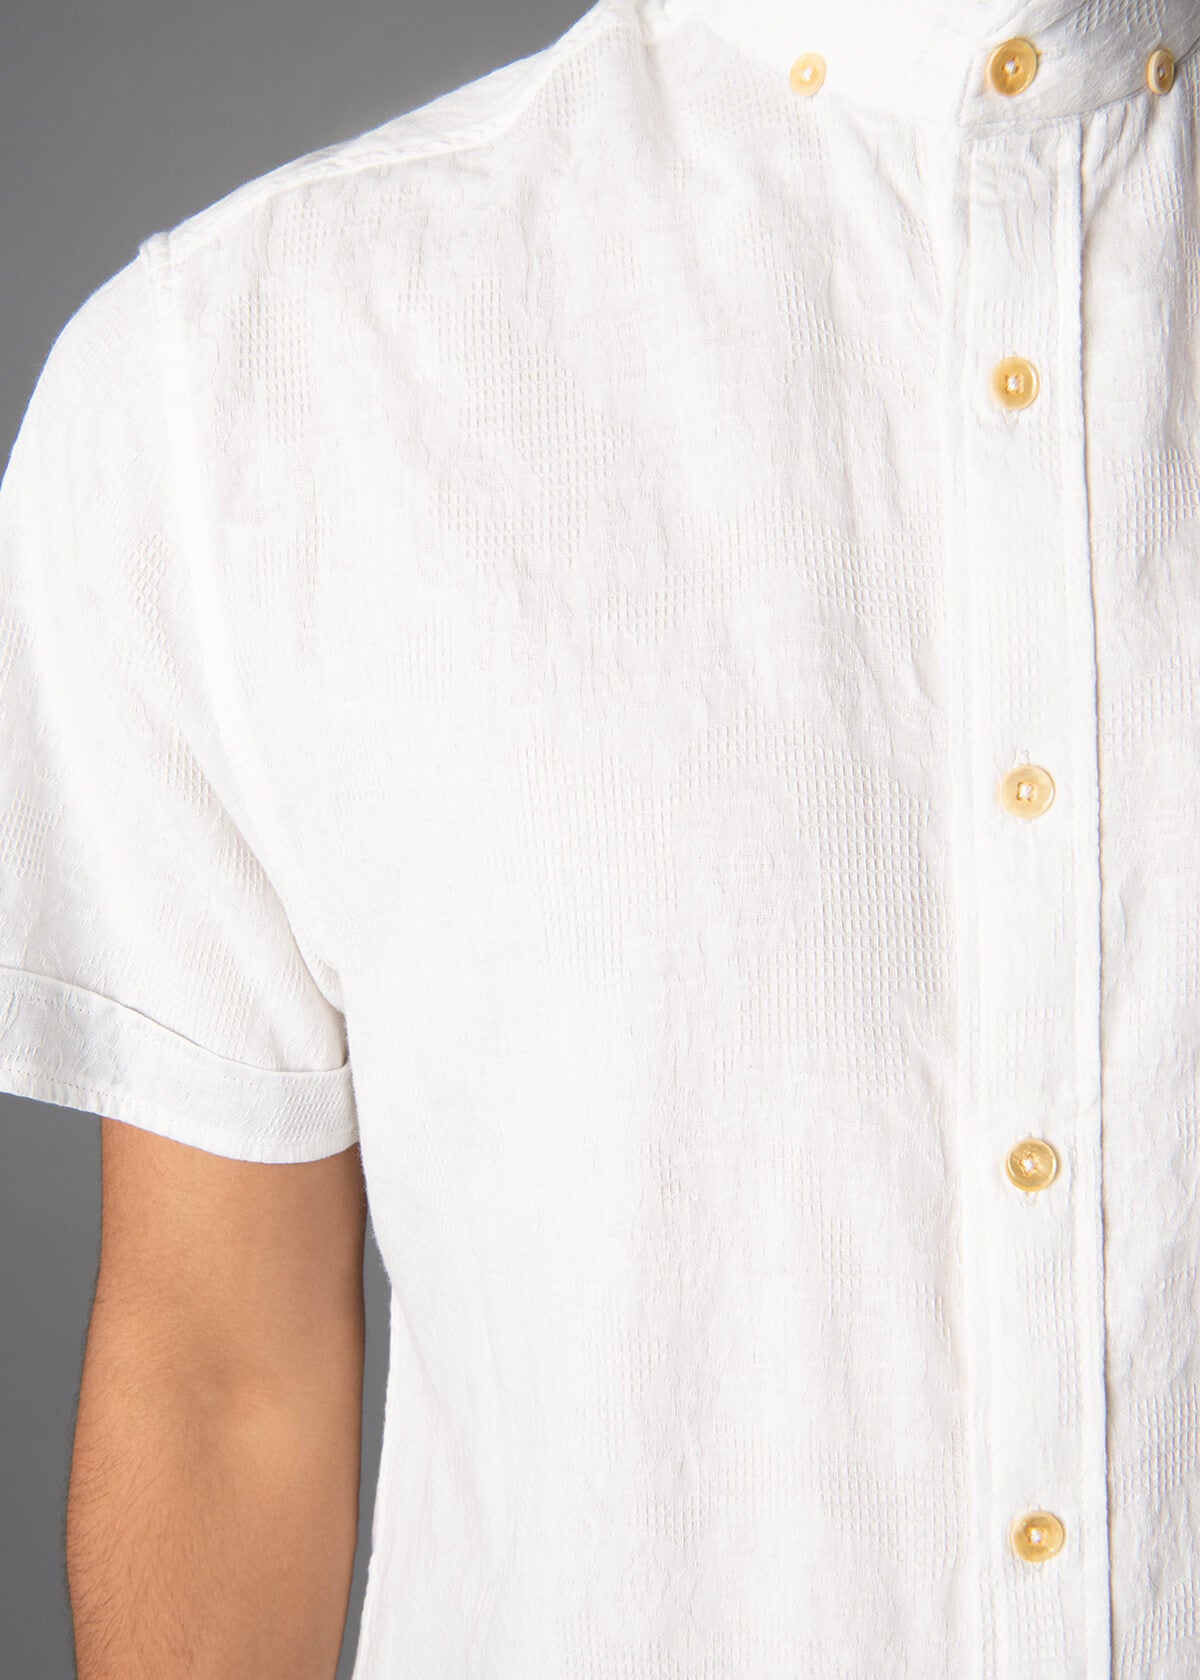 white short sleeve jacquard mens shirt